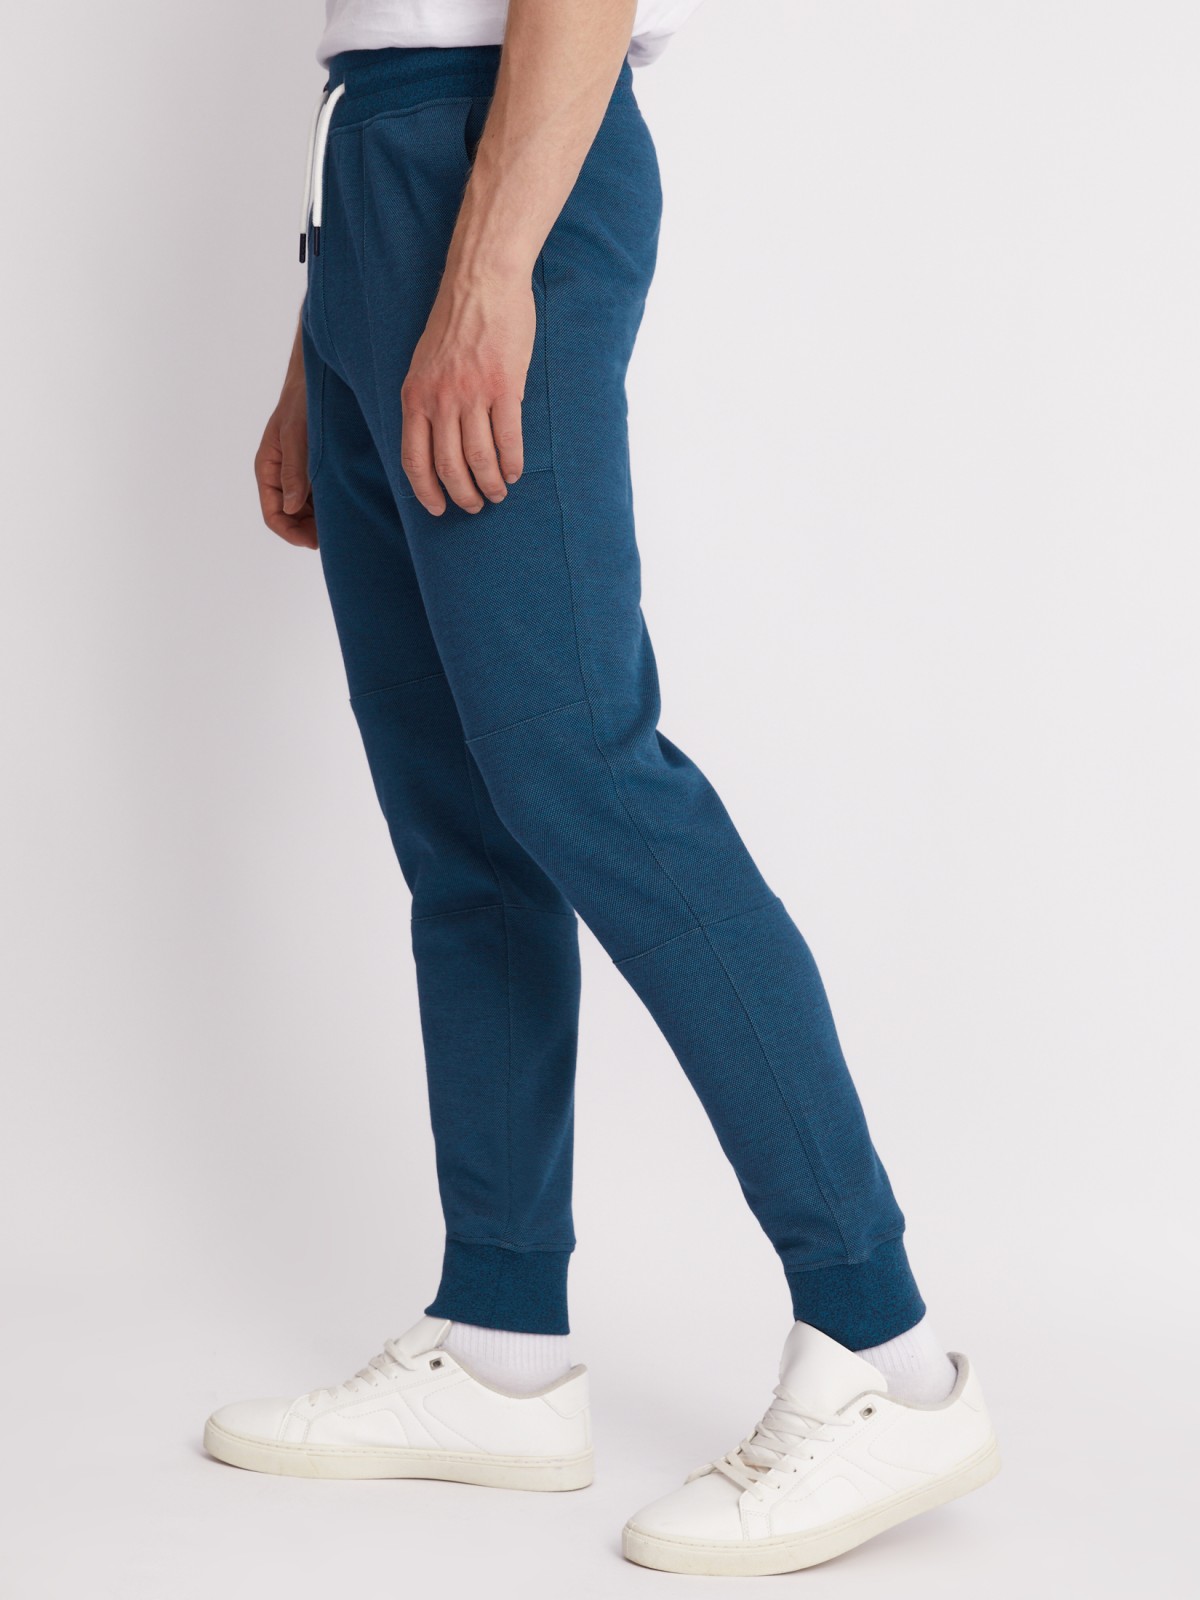 Трикотажные брюки-джоггеры в спортивном стиле zolla 213317604053, цвет бирюзовый, размер S - фото 5